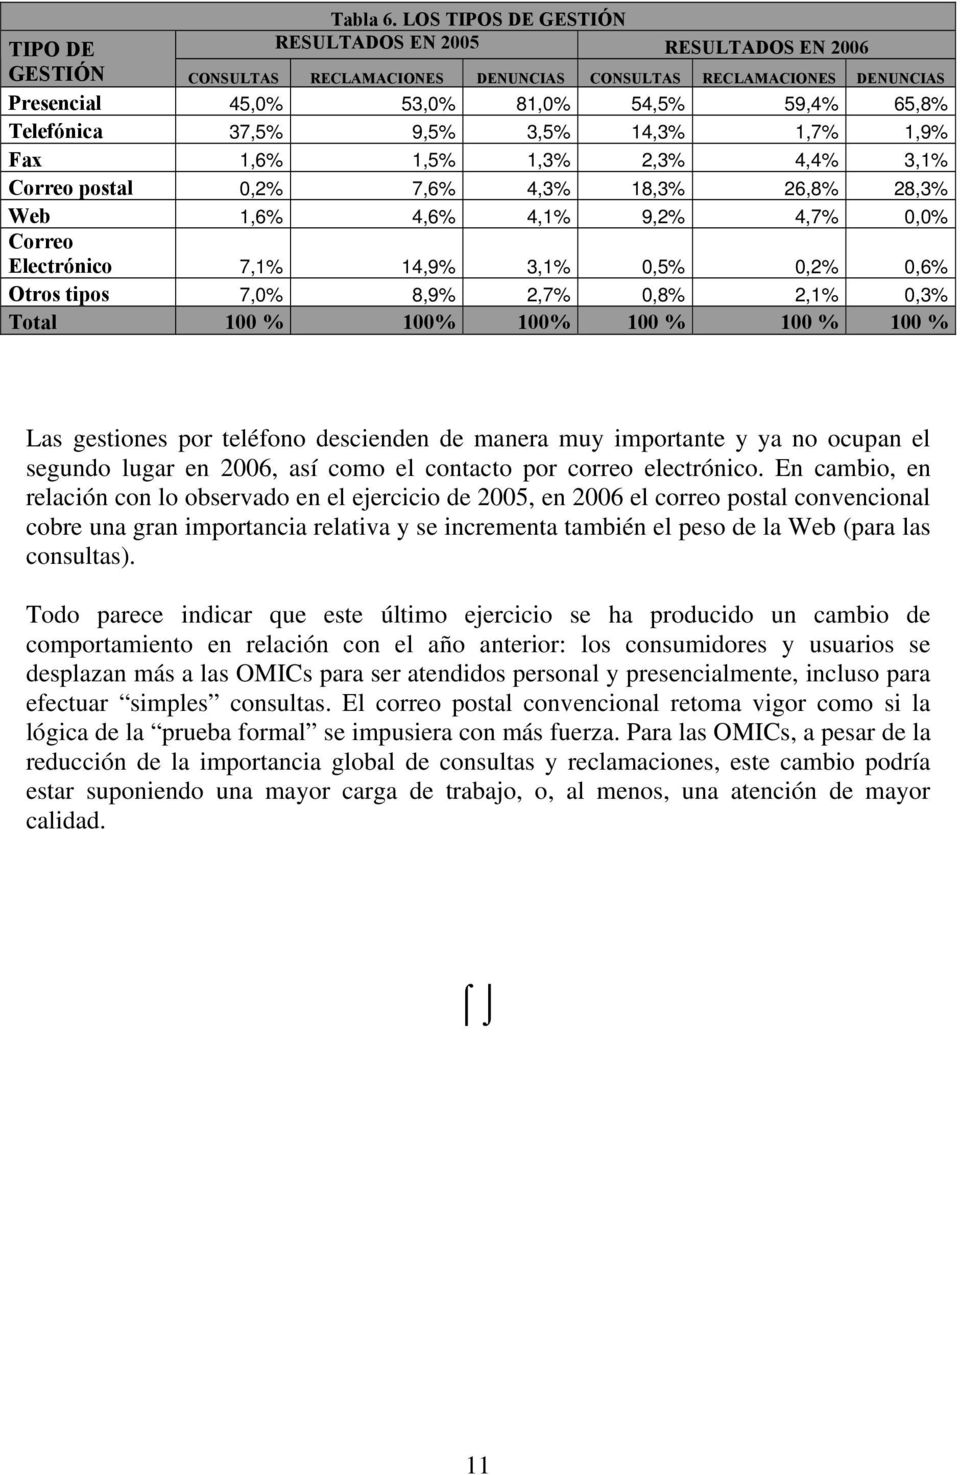 9,5% 3,5% 14,3% 1,7% 1,9% Fax 1,6% 1,5% 1,3% 2,3% 4,4% 3,1% Correo postal 0,2% 7,6% 4,3% 18,3% 26,8% 28,3% Web 1,6% 4,6% 4,1% 9,2% 4,7% 0,0% Correo Electrónico 7,1% 14,9% 3,1% 0,5% 0,2% 0,6% Otros